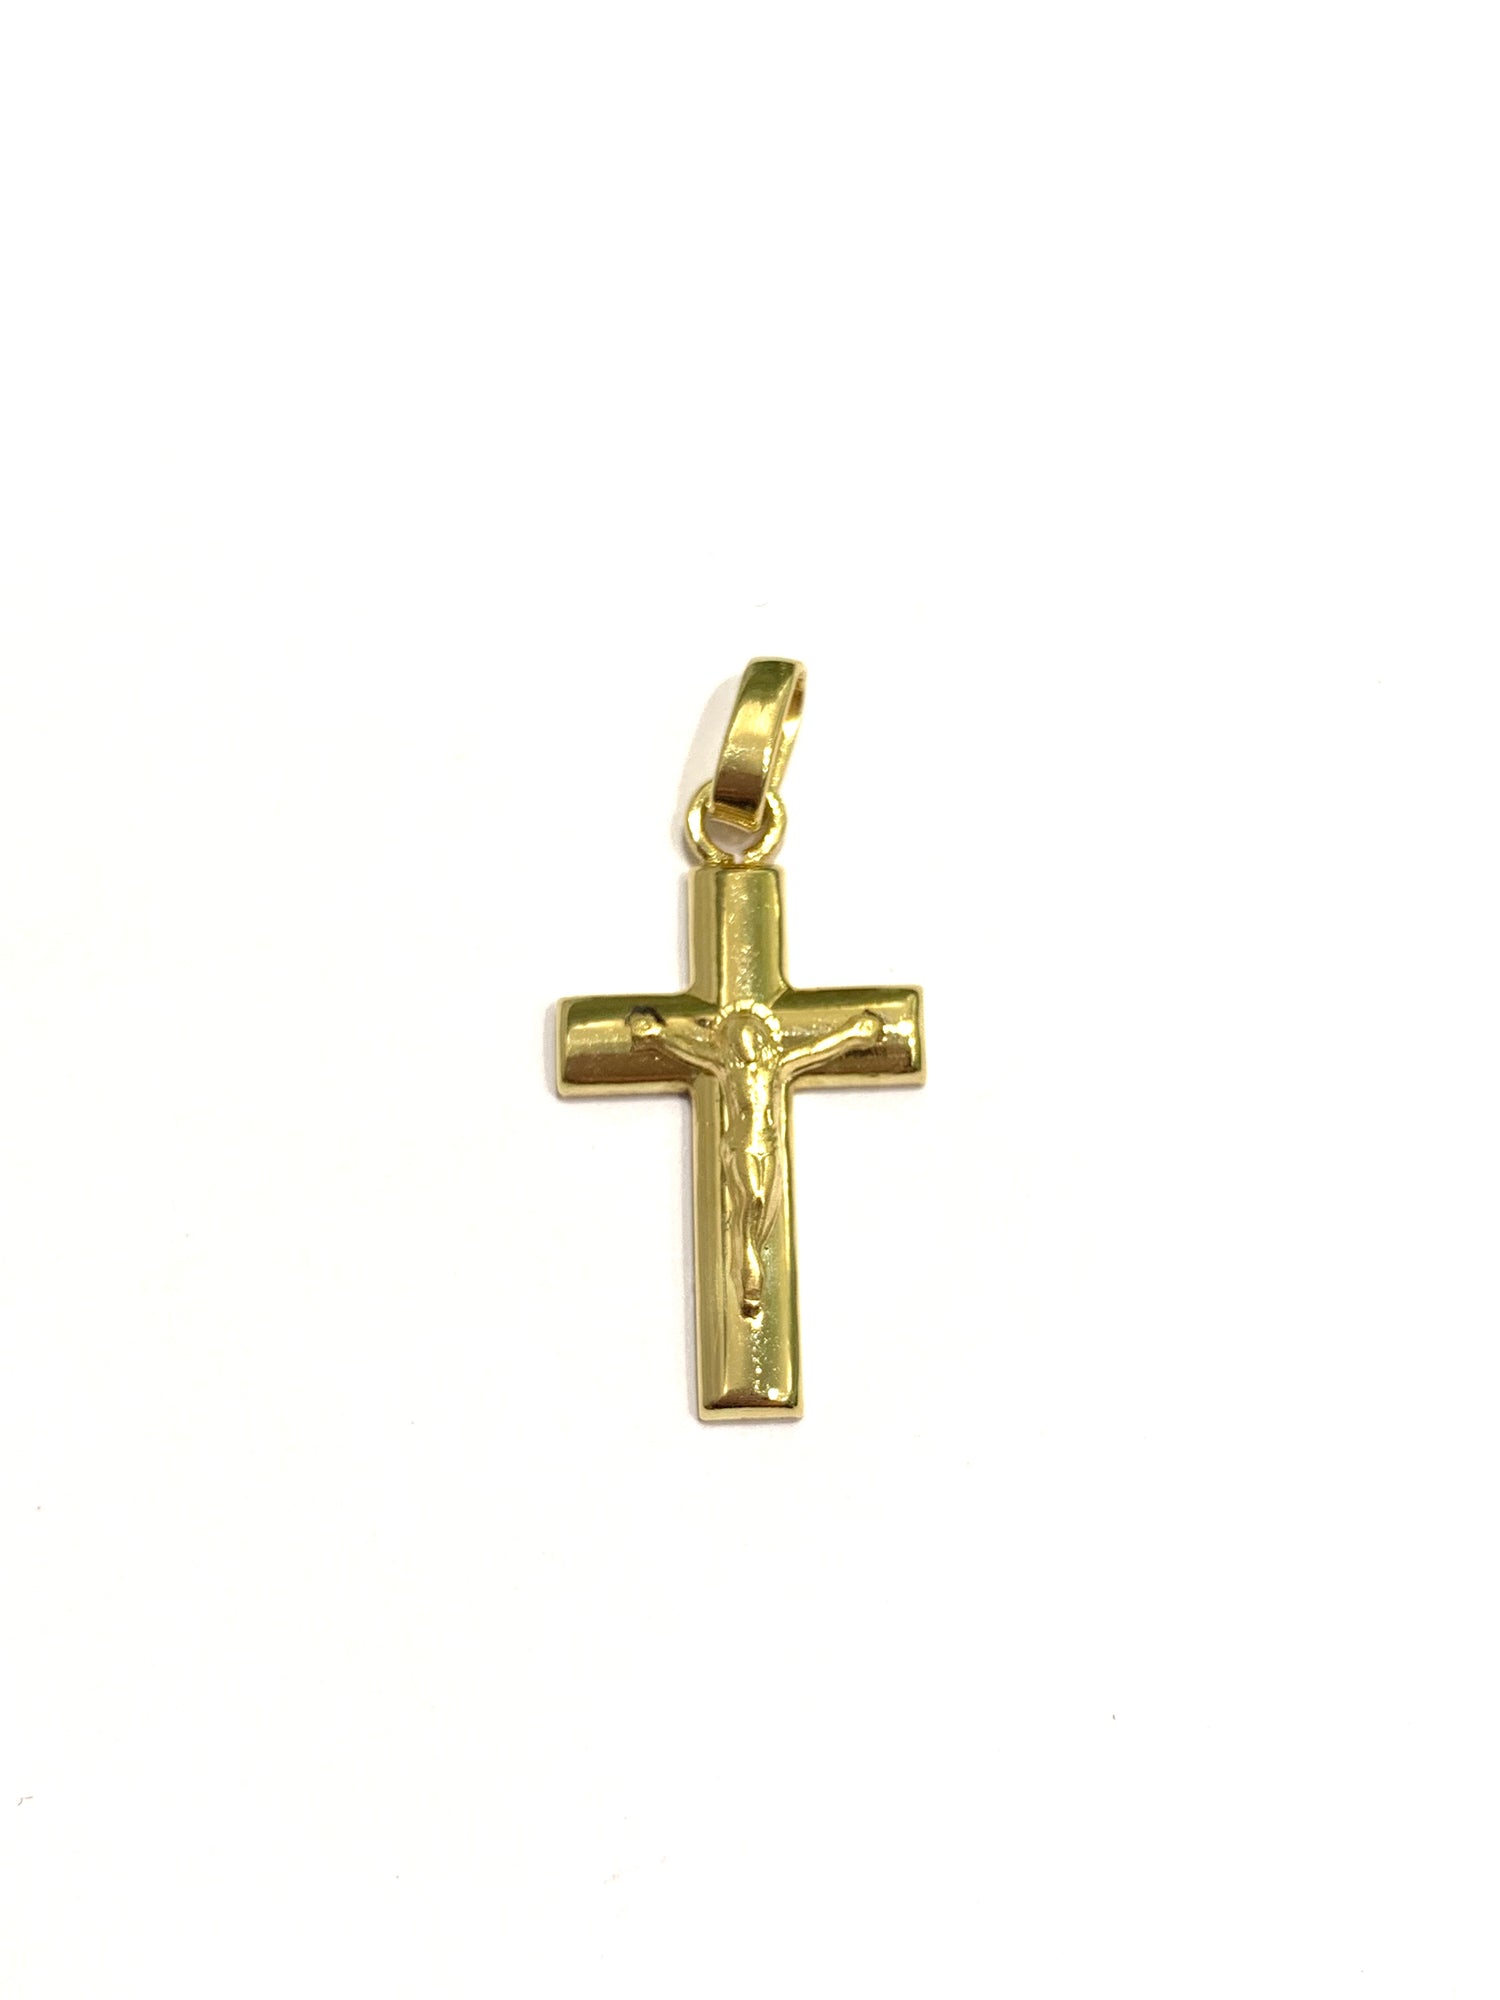 Ciondolo per collana in oro giallo 18kt con croce e cristo.  Dimensione 1,3x3 cm incluso 1 cm di anellino.